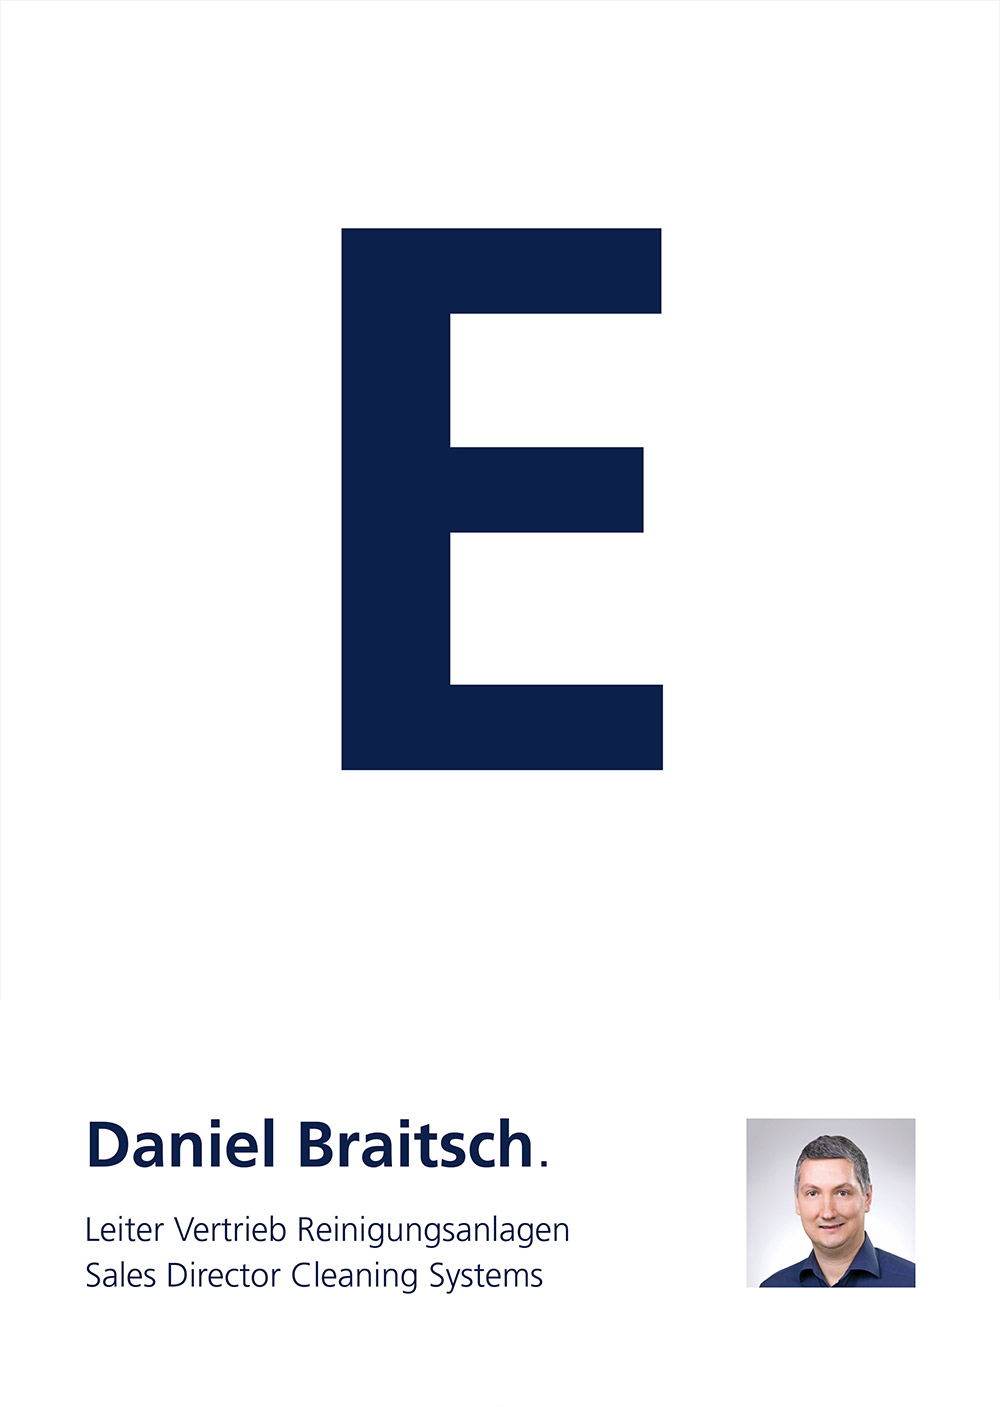 Tour E - Daniel Braitsch